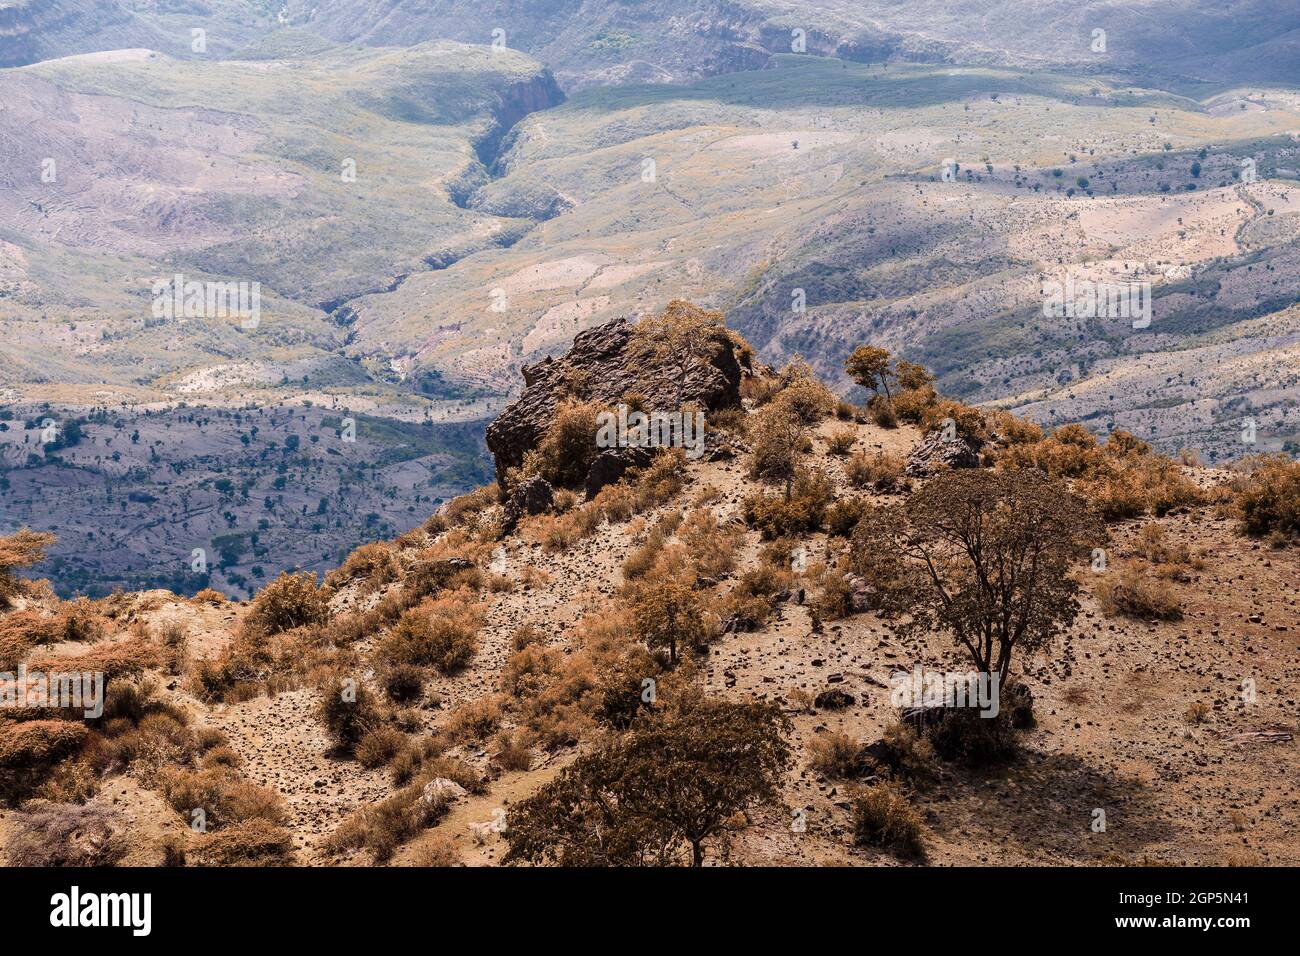 Schöne Berglandschaft mit Canyon und trockenes Flussbett, Oromia Region. Äthiopien wüste Landschaft, Afrika. Stockfoto